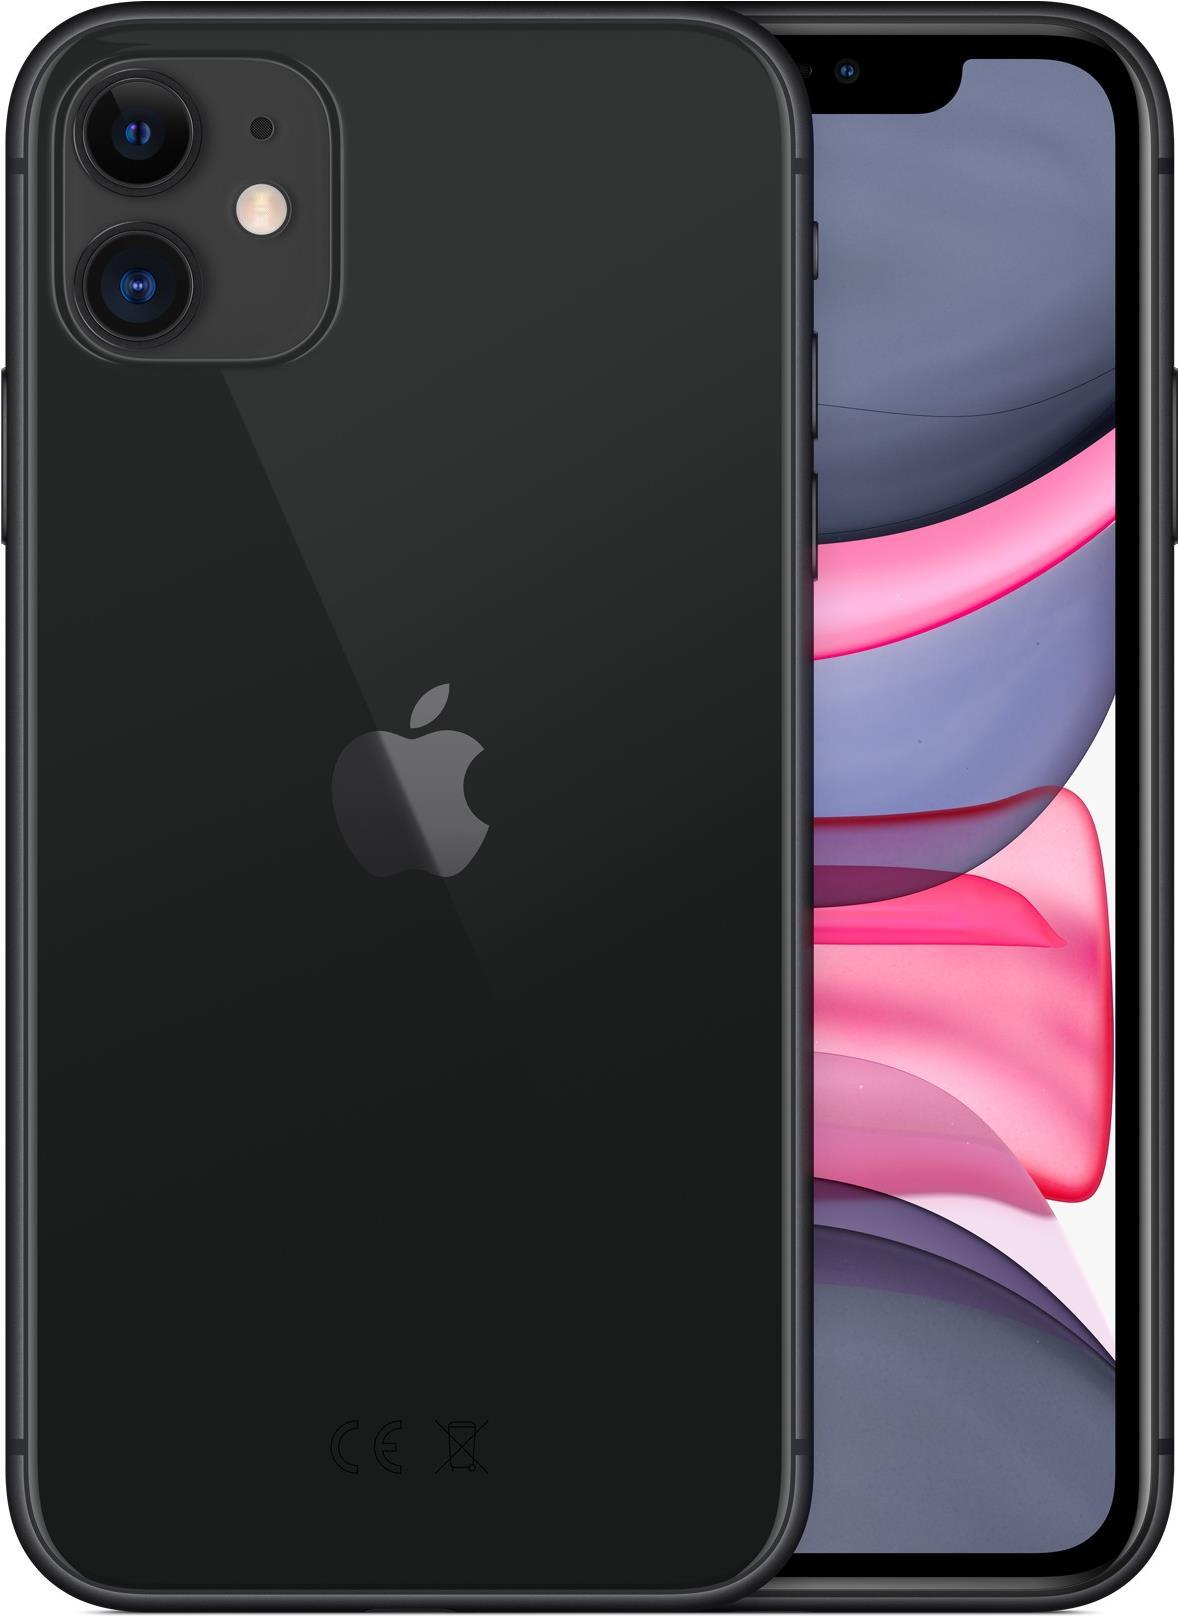 Apple アップル iPhone 11 Black 64GB ブラック - スマートフォン本体